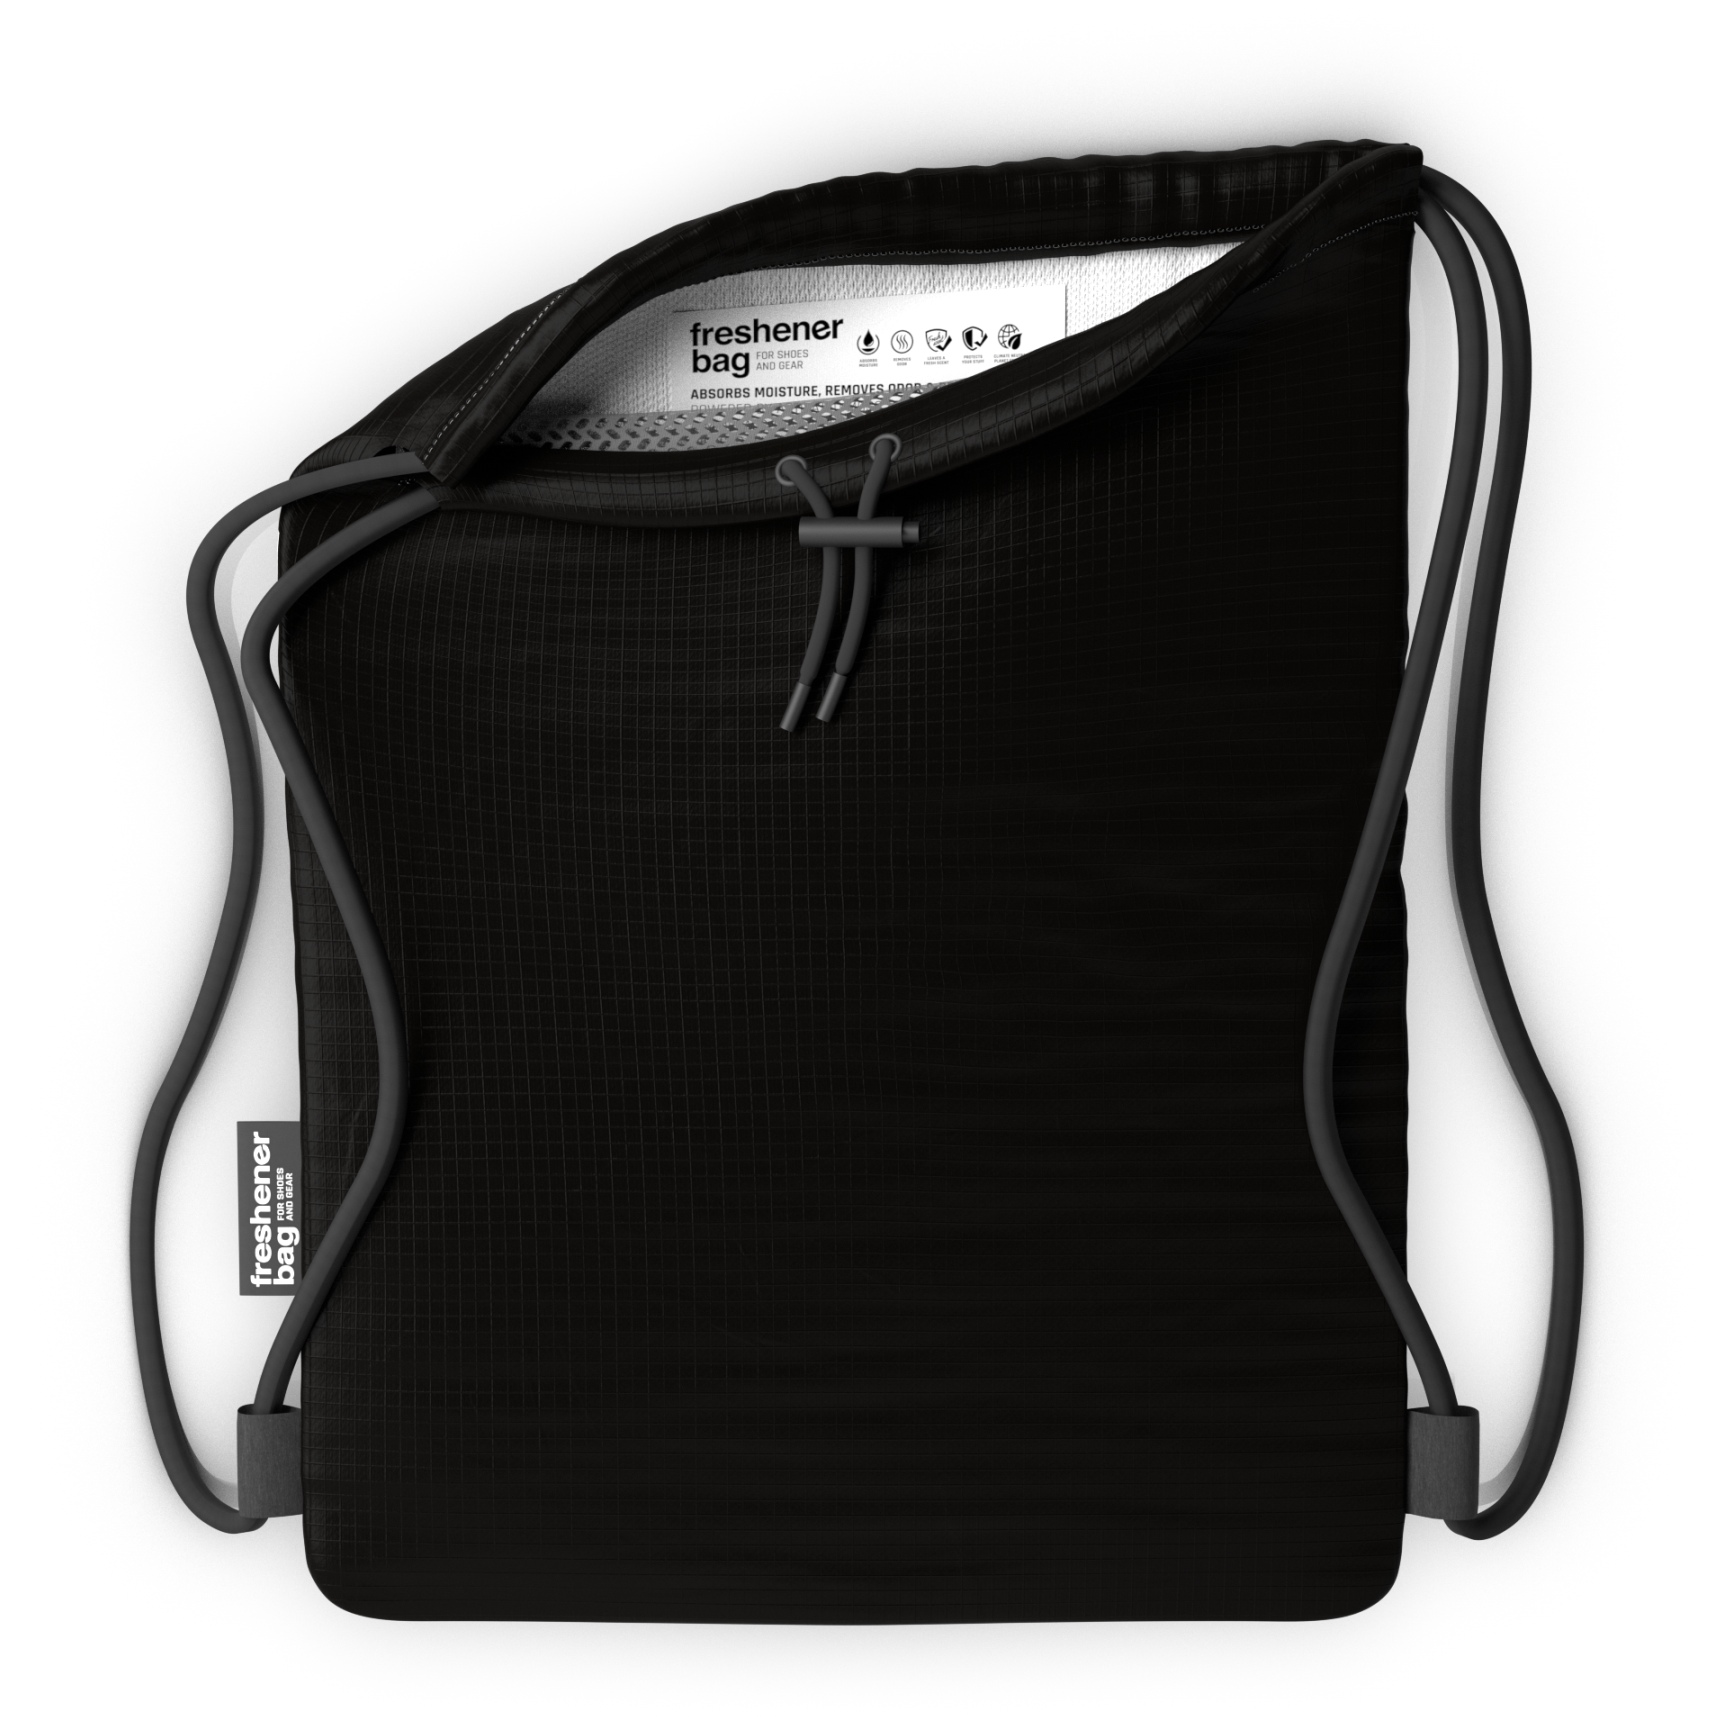 Produktbild von SmellWell Freshener Bag XL - Anti-Odor Turnbeutel - 20L - schwarz